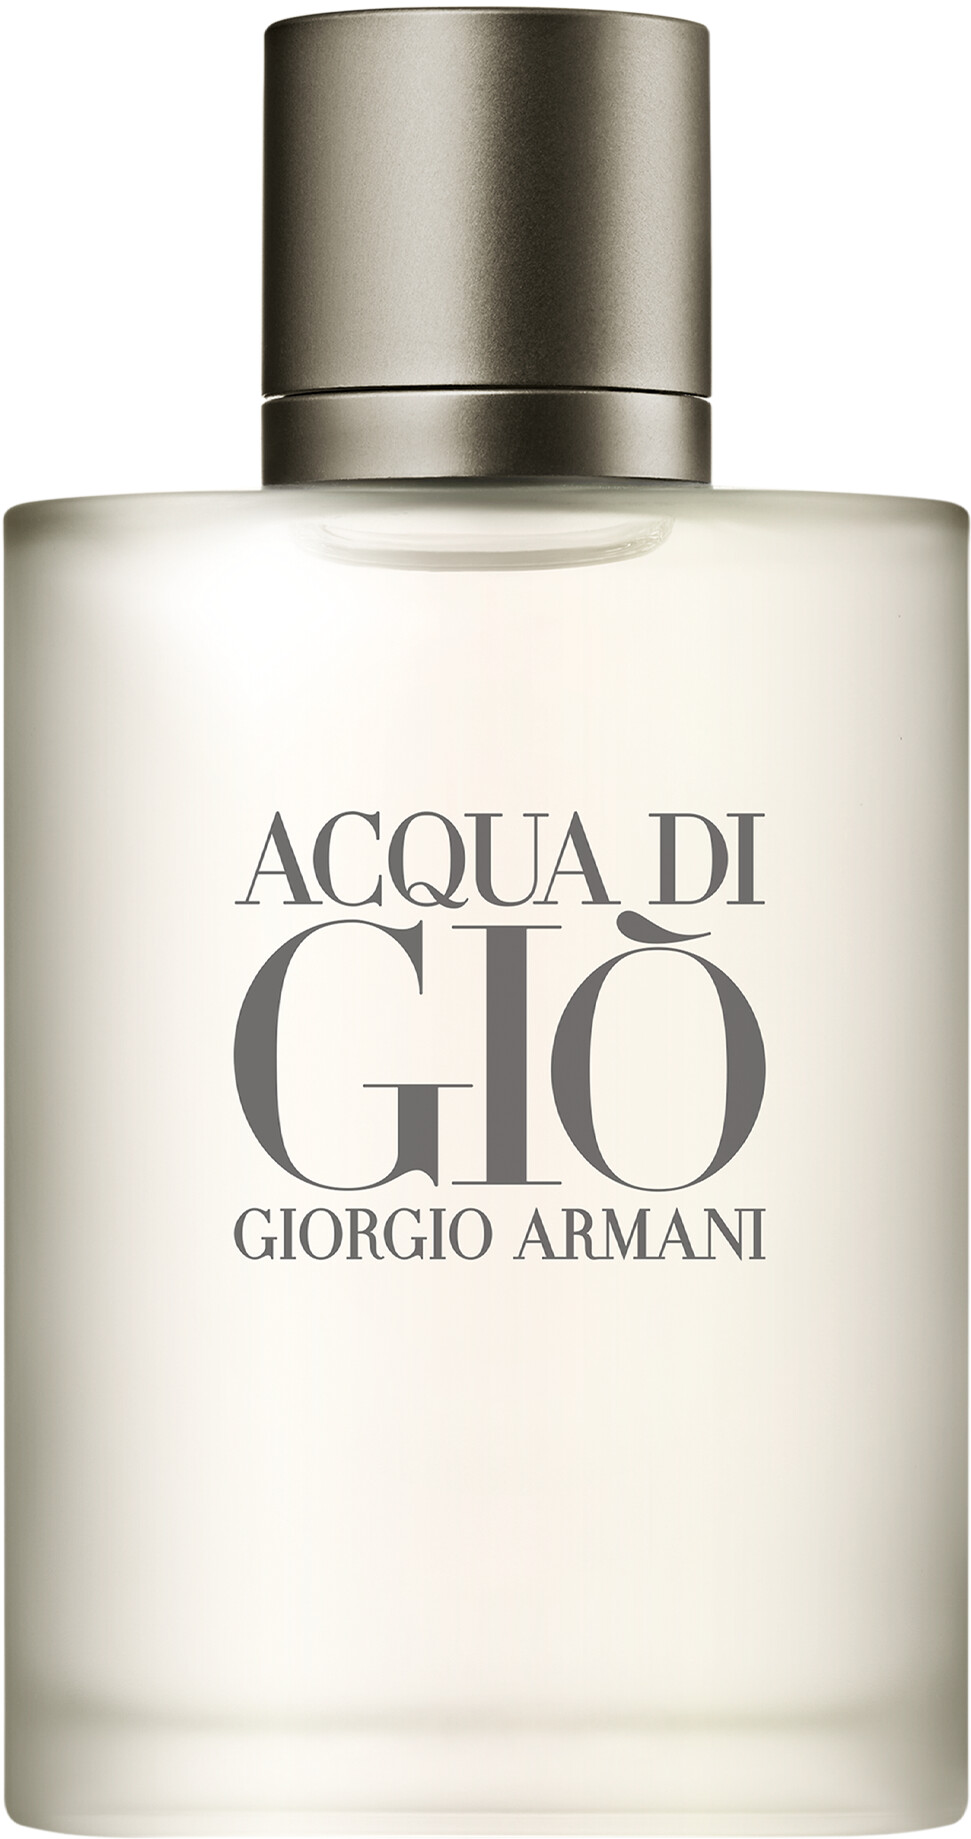 Giorgio Armani Acqua di Gio Pour Homme Eau de Toilette Spray 50ml